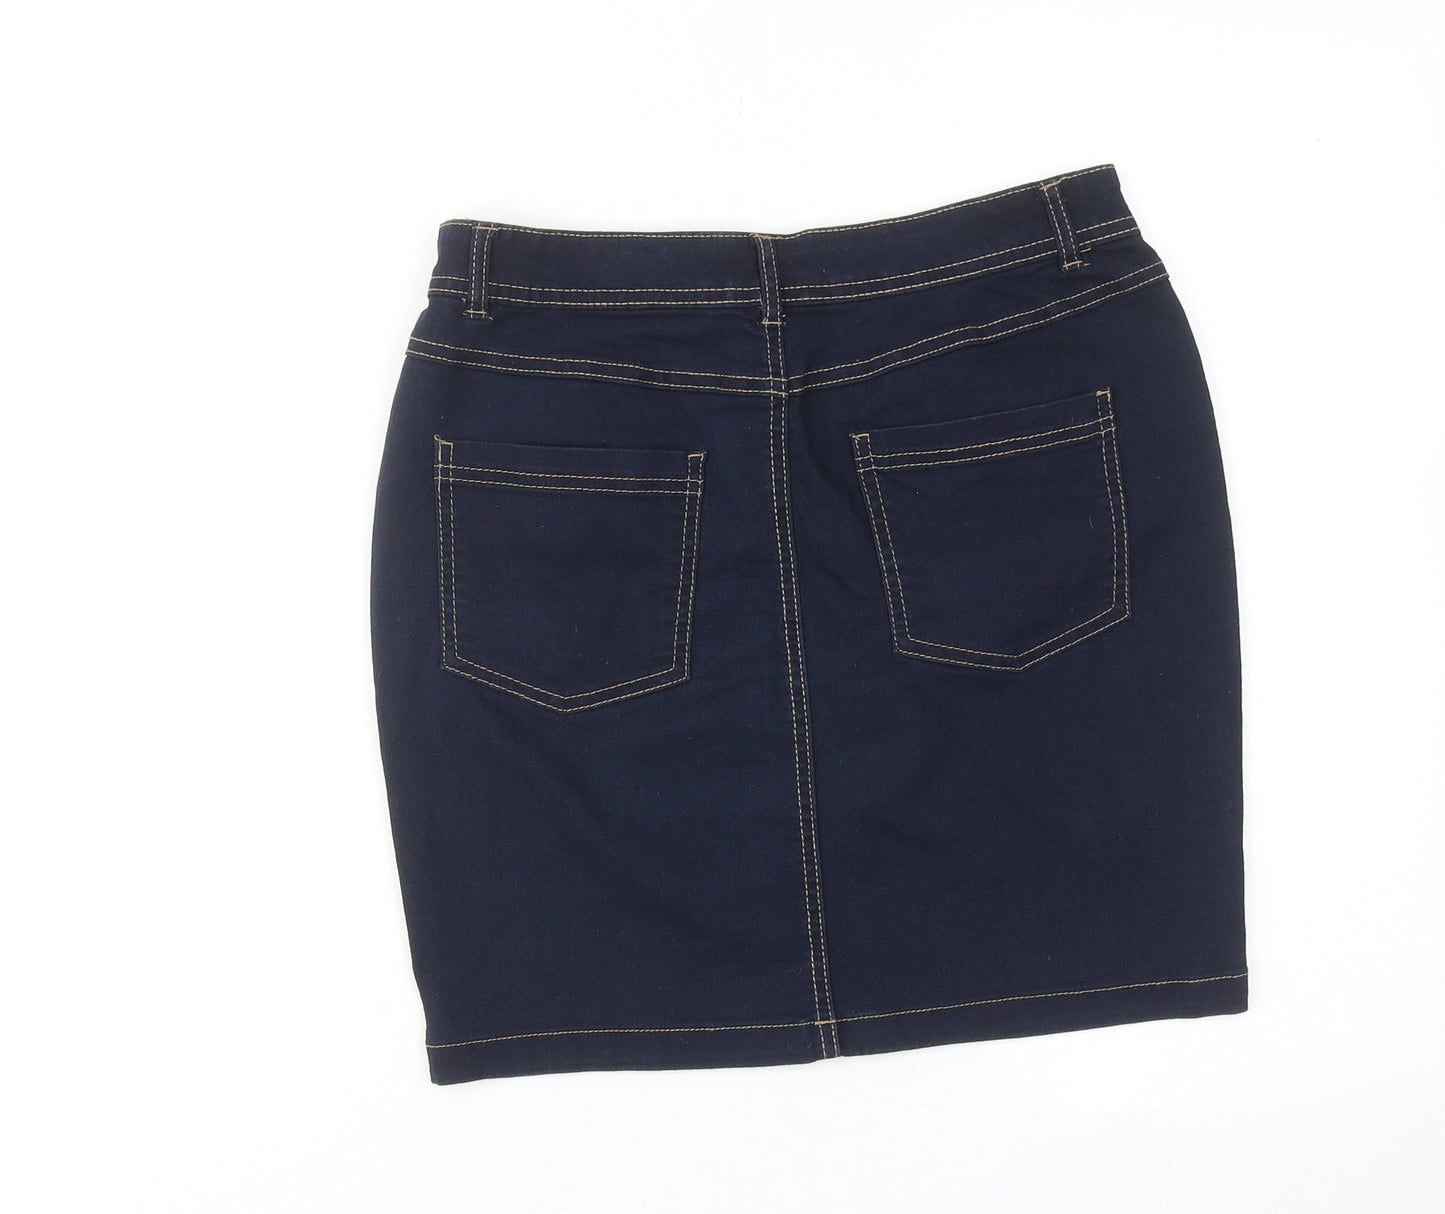 TISSAIA Womens Blue Cotton A-Line Skirt Size 10 Zip